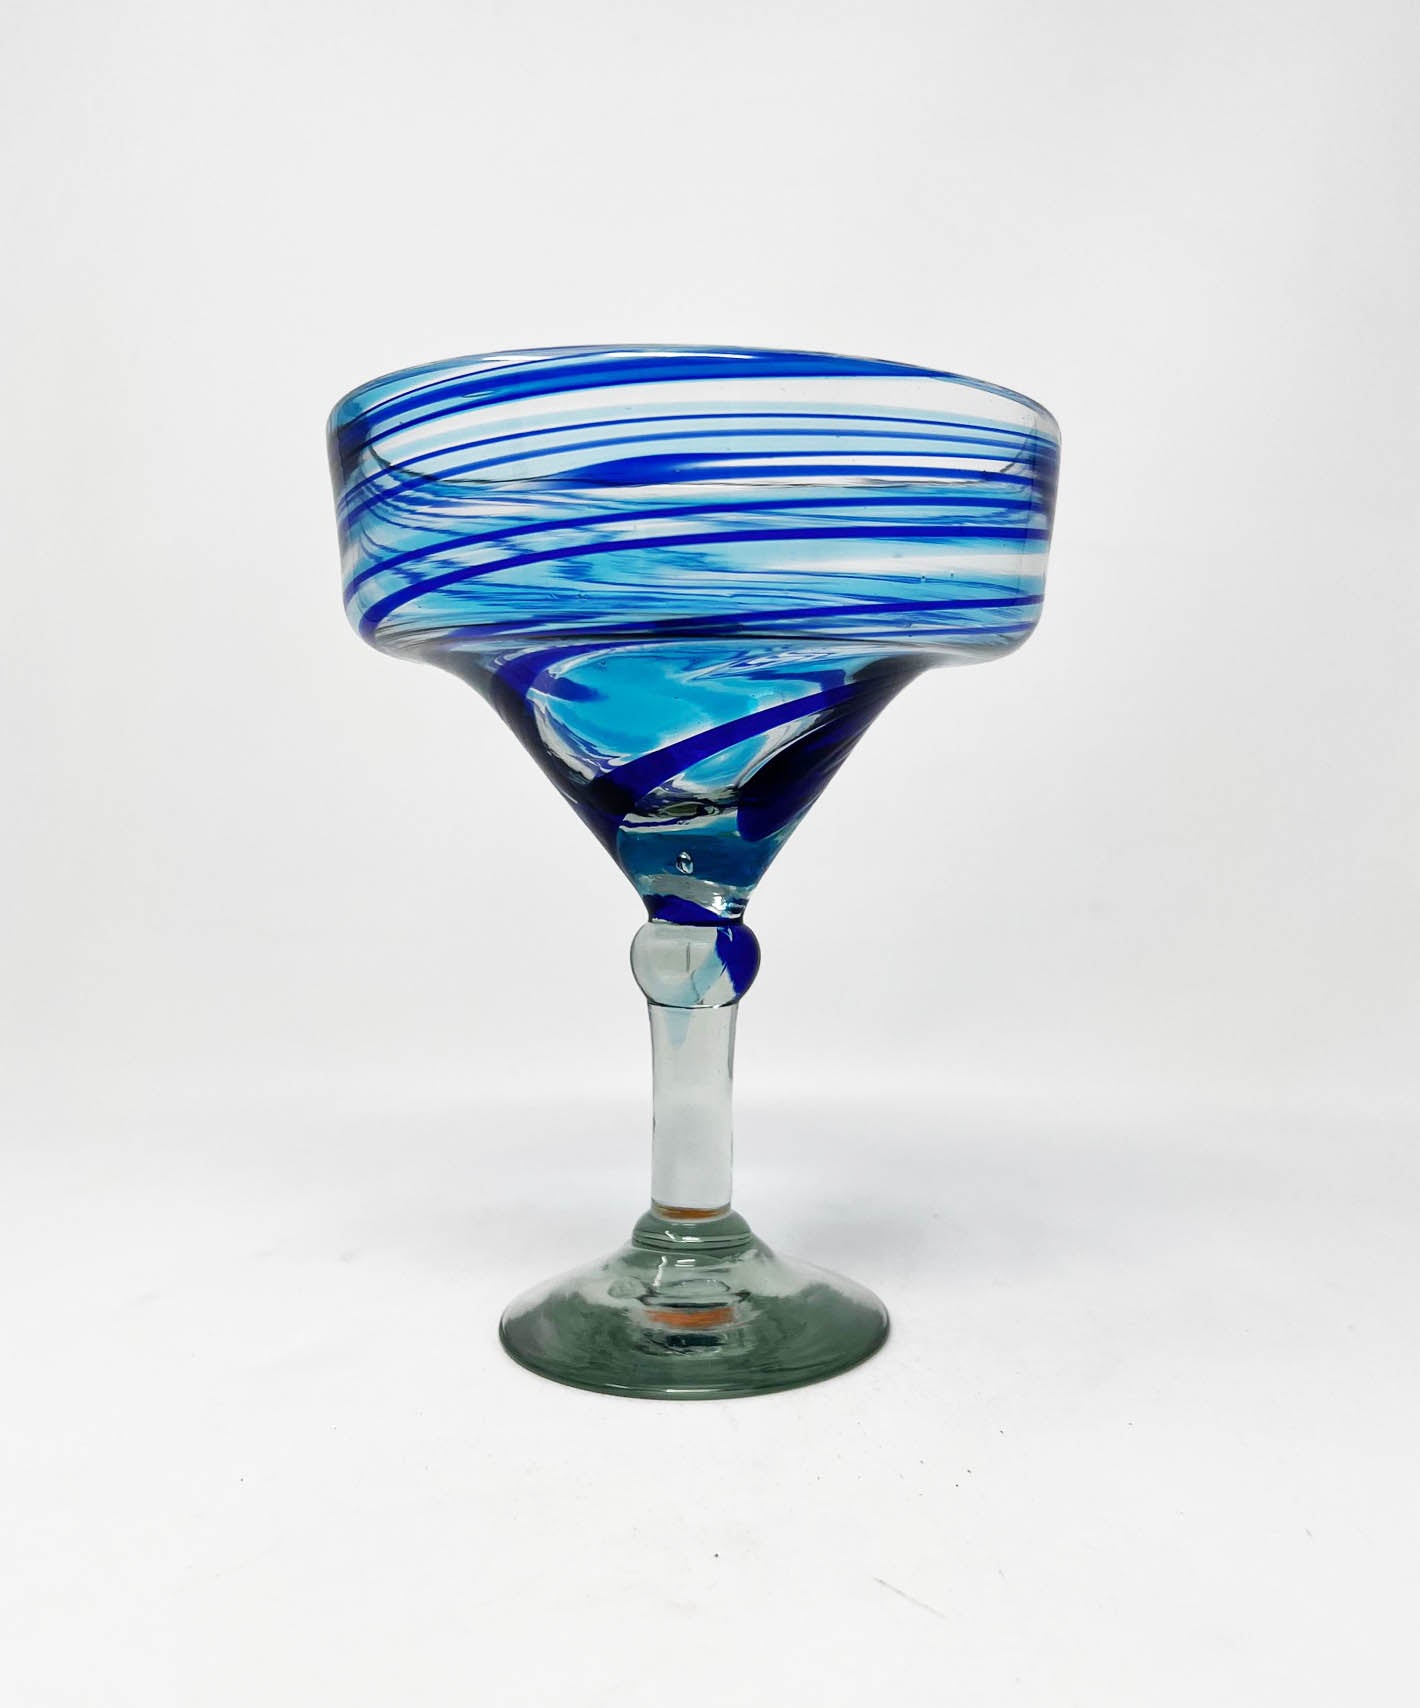 Hand Blown Margarita Glass - Turquoise/Blue Swirl